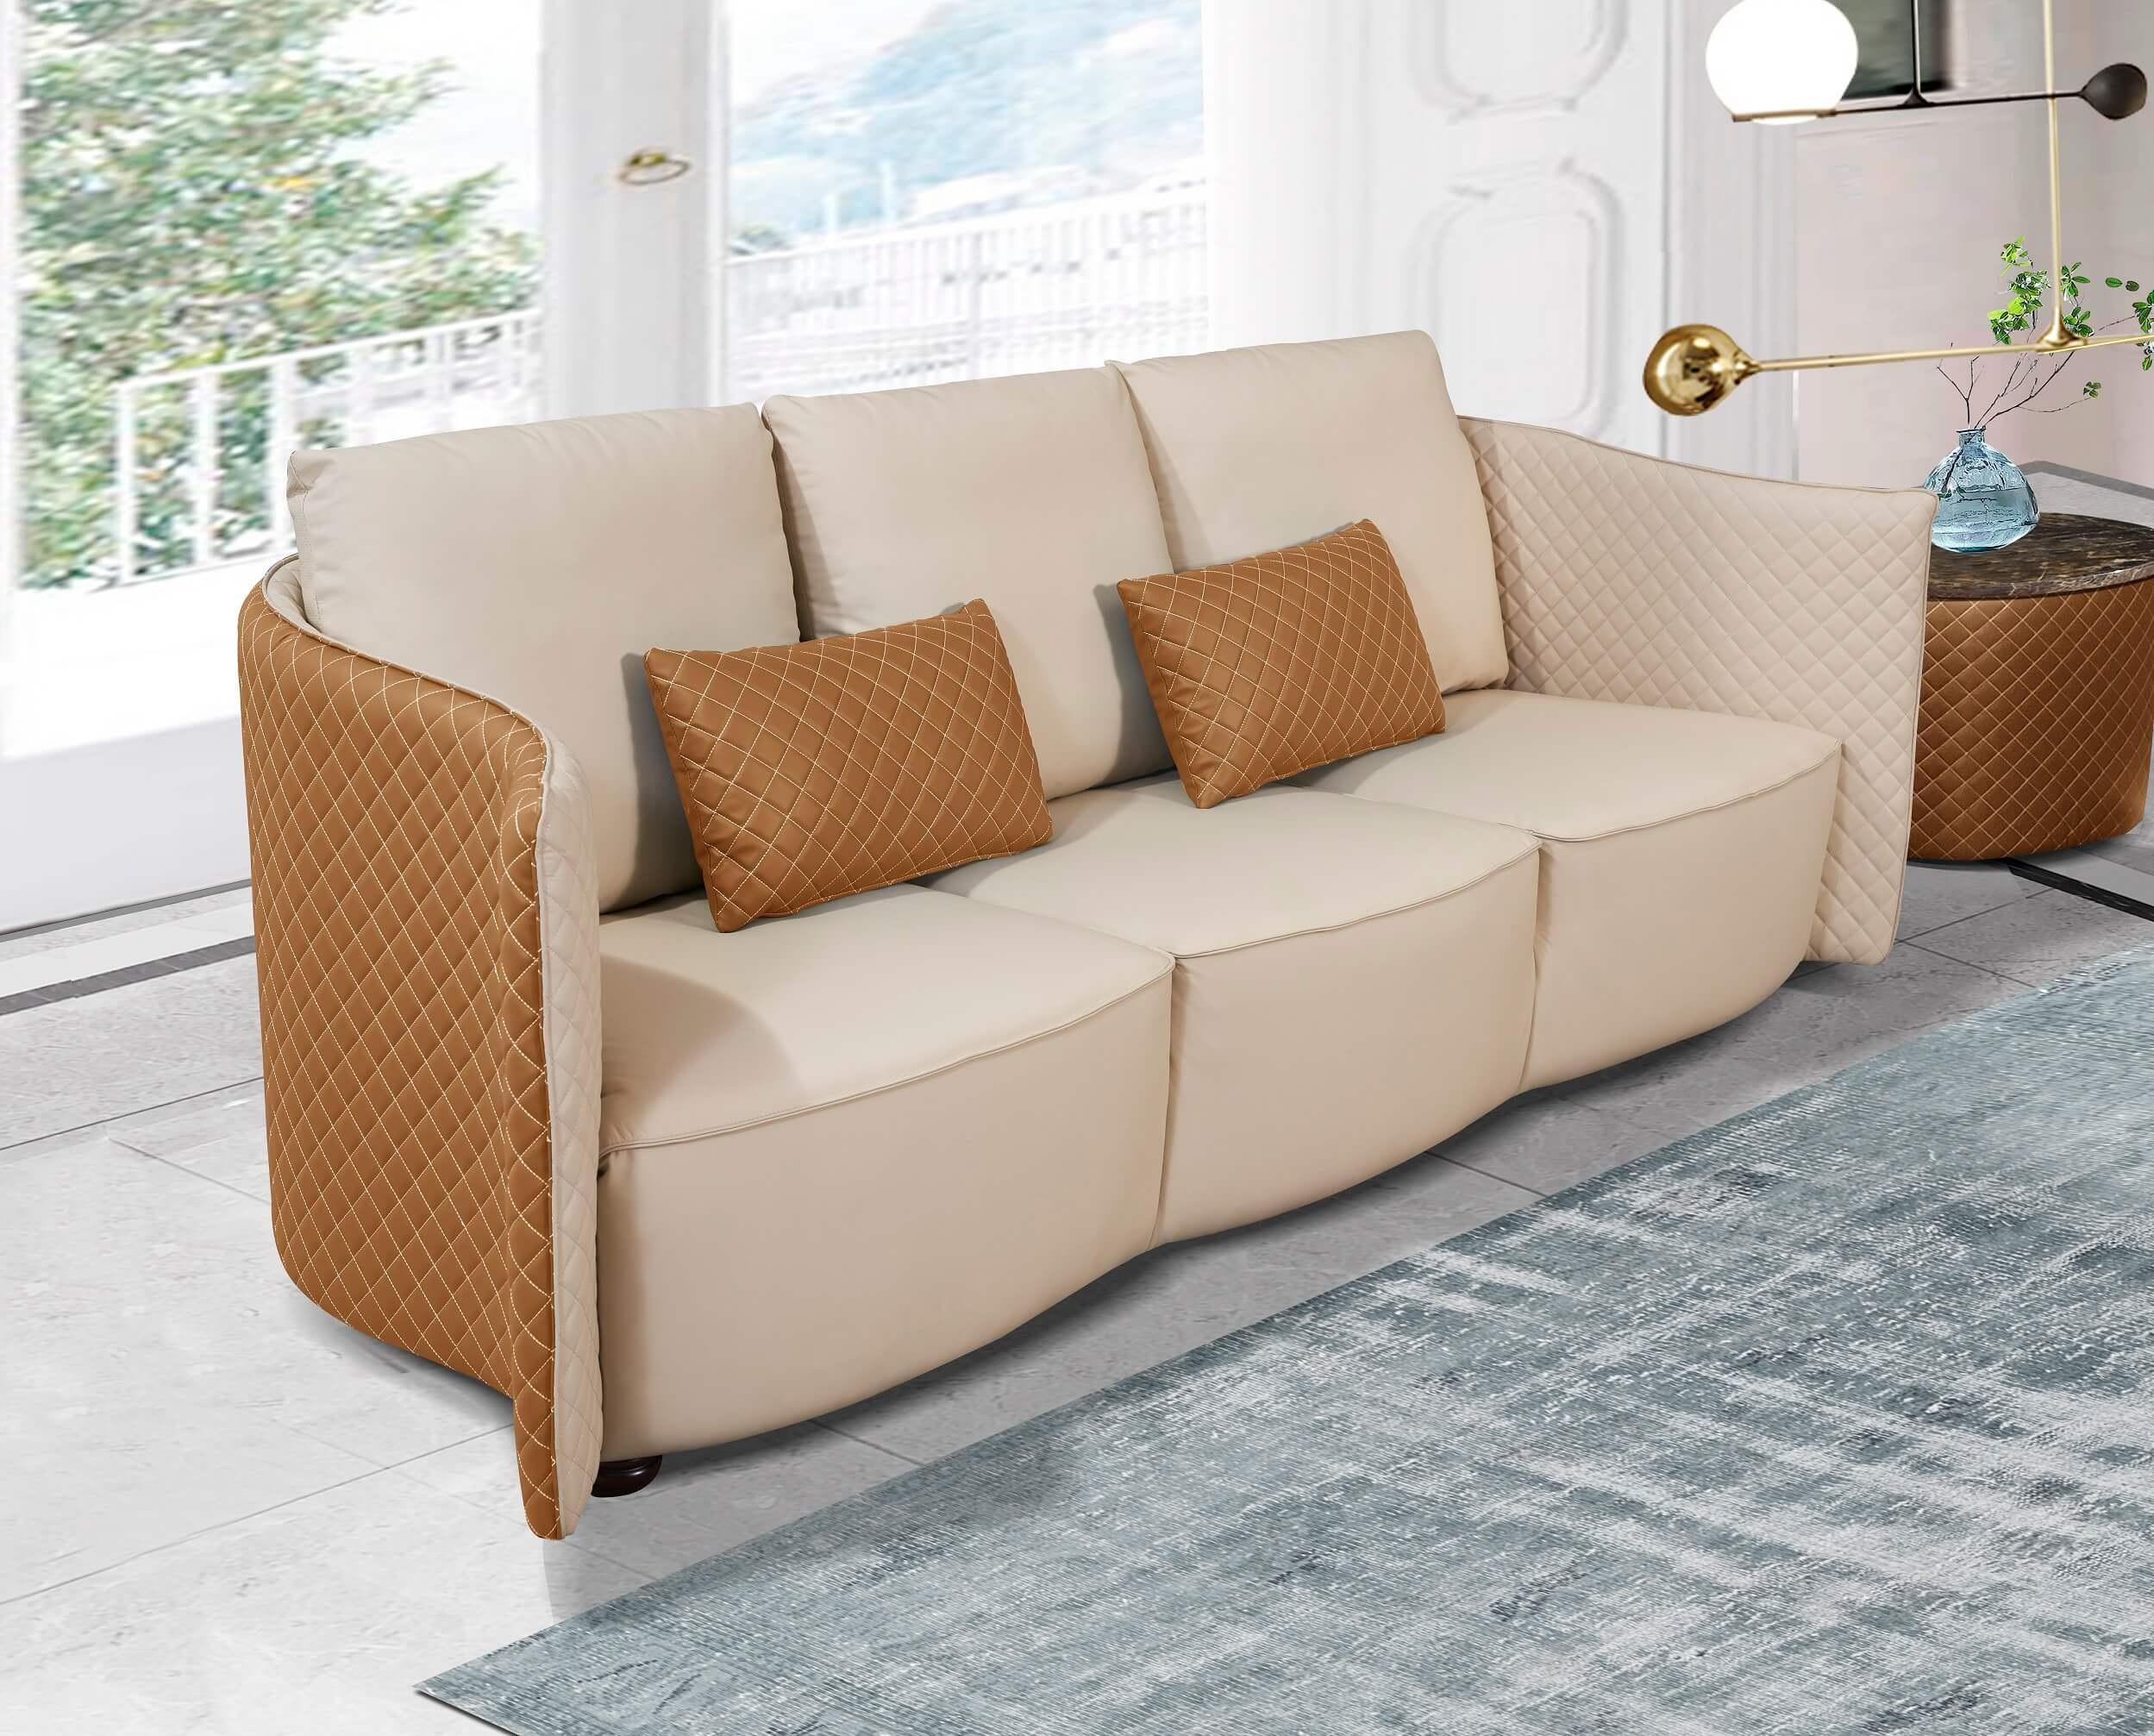 

    
Beige & Orange Italian Leather Sofa MAKASSAR EUROPEAN FURNITURE
